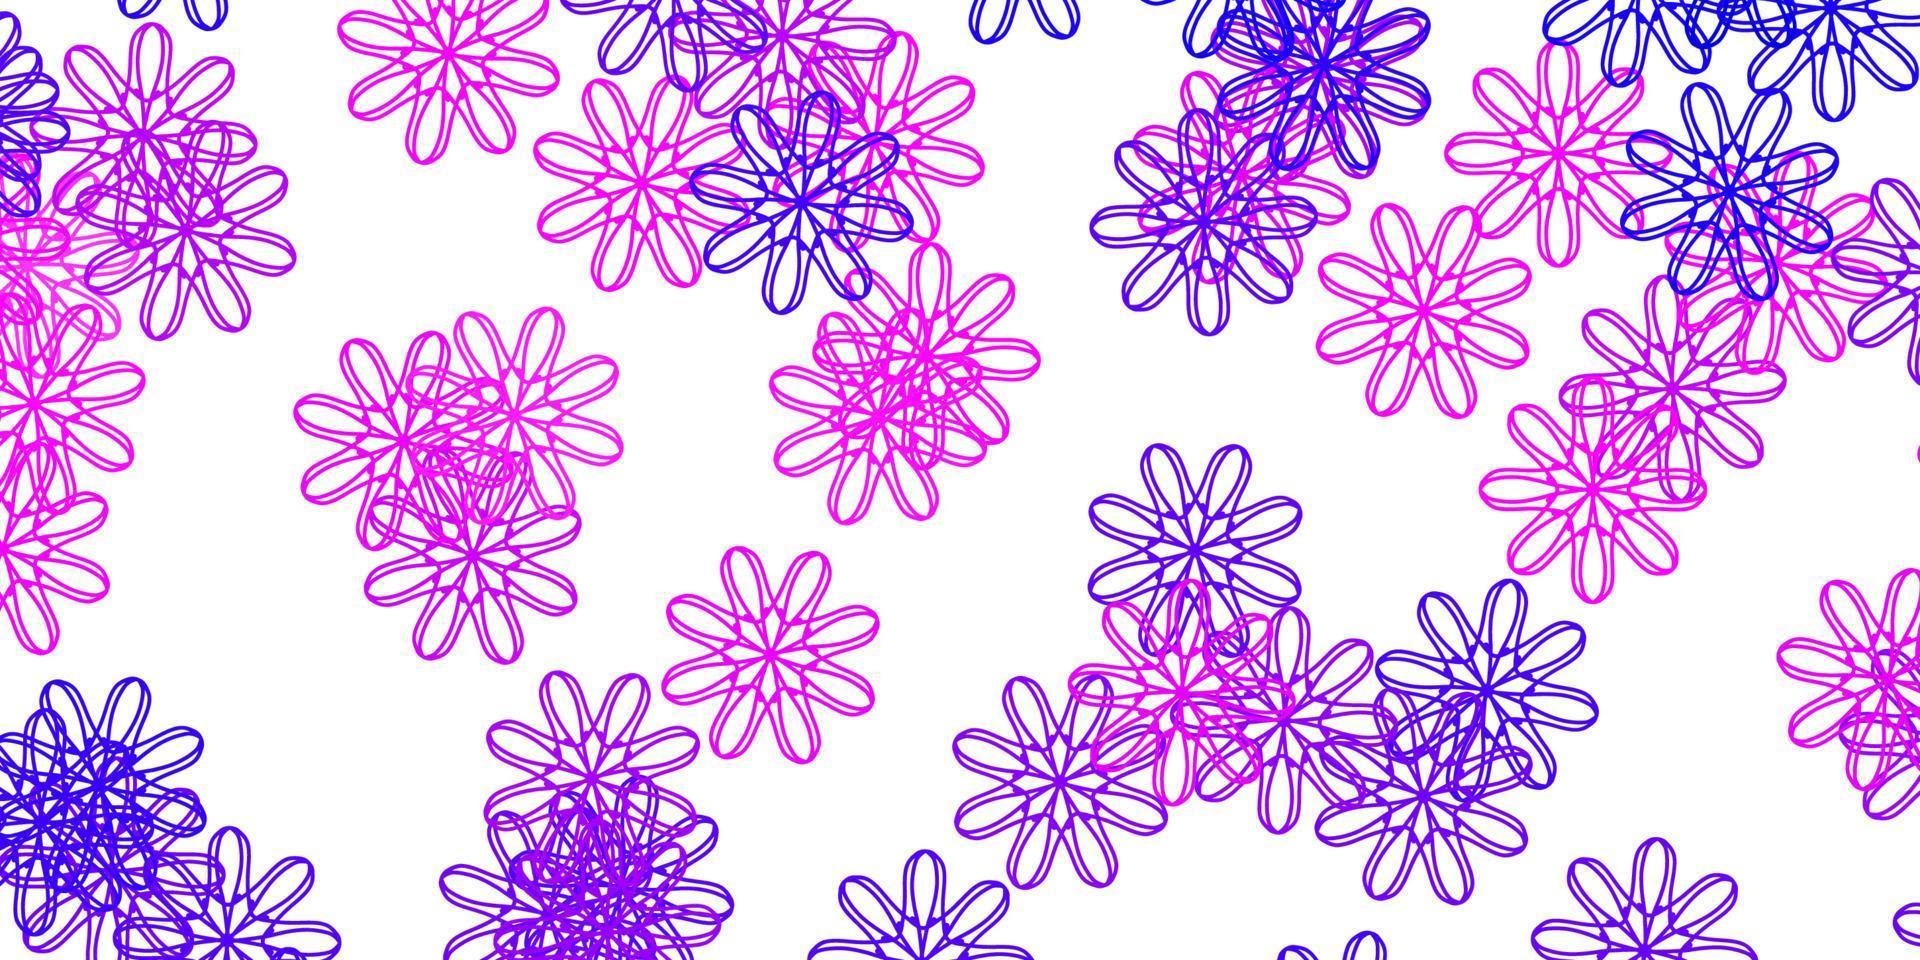 luz roxa, rosa vetor doodle padrão com flores.